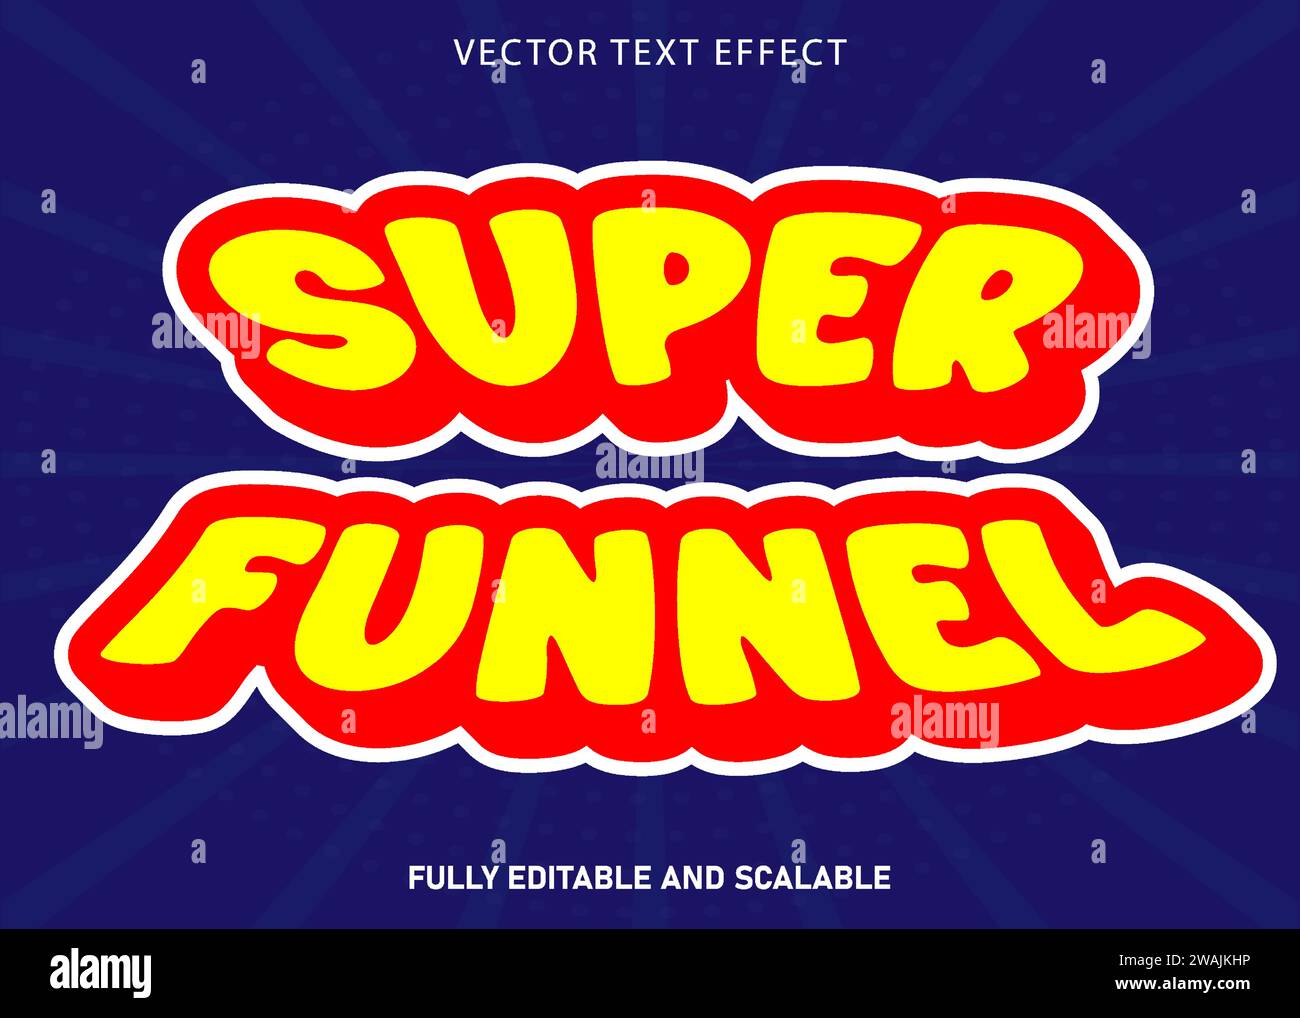 Supertrichter bearbeitbarer Text-Sticker-Vektor. Stock Vektor